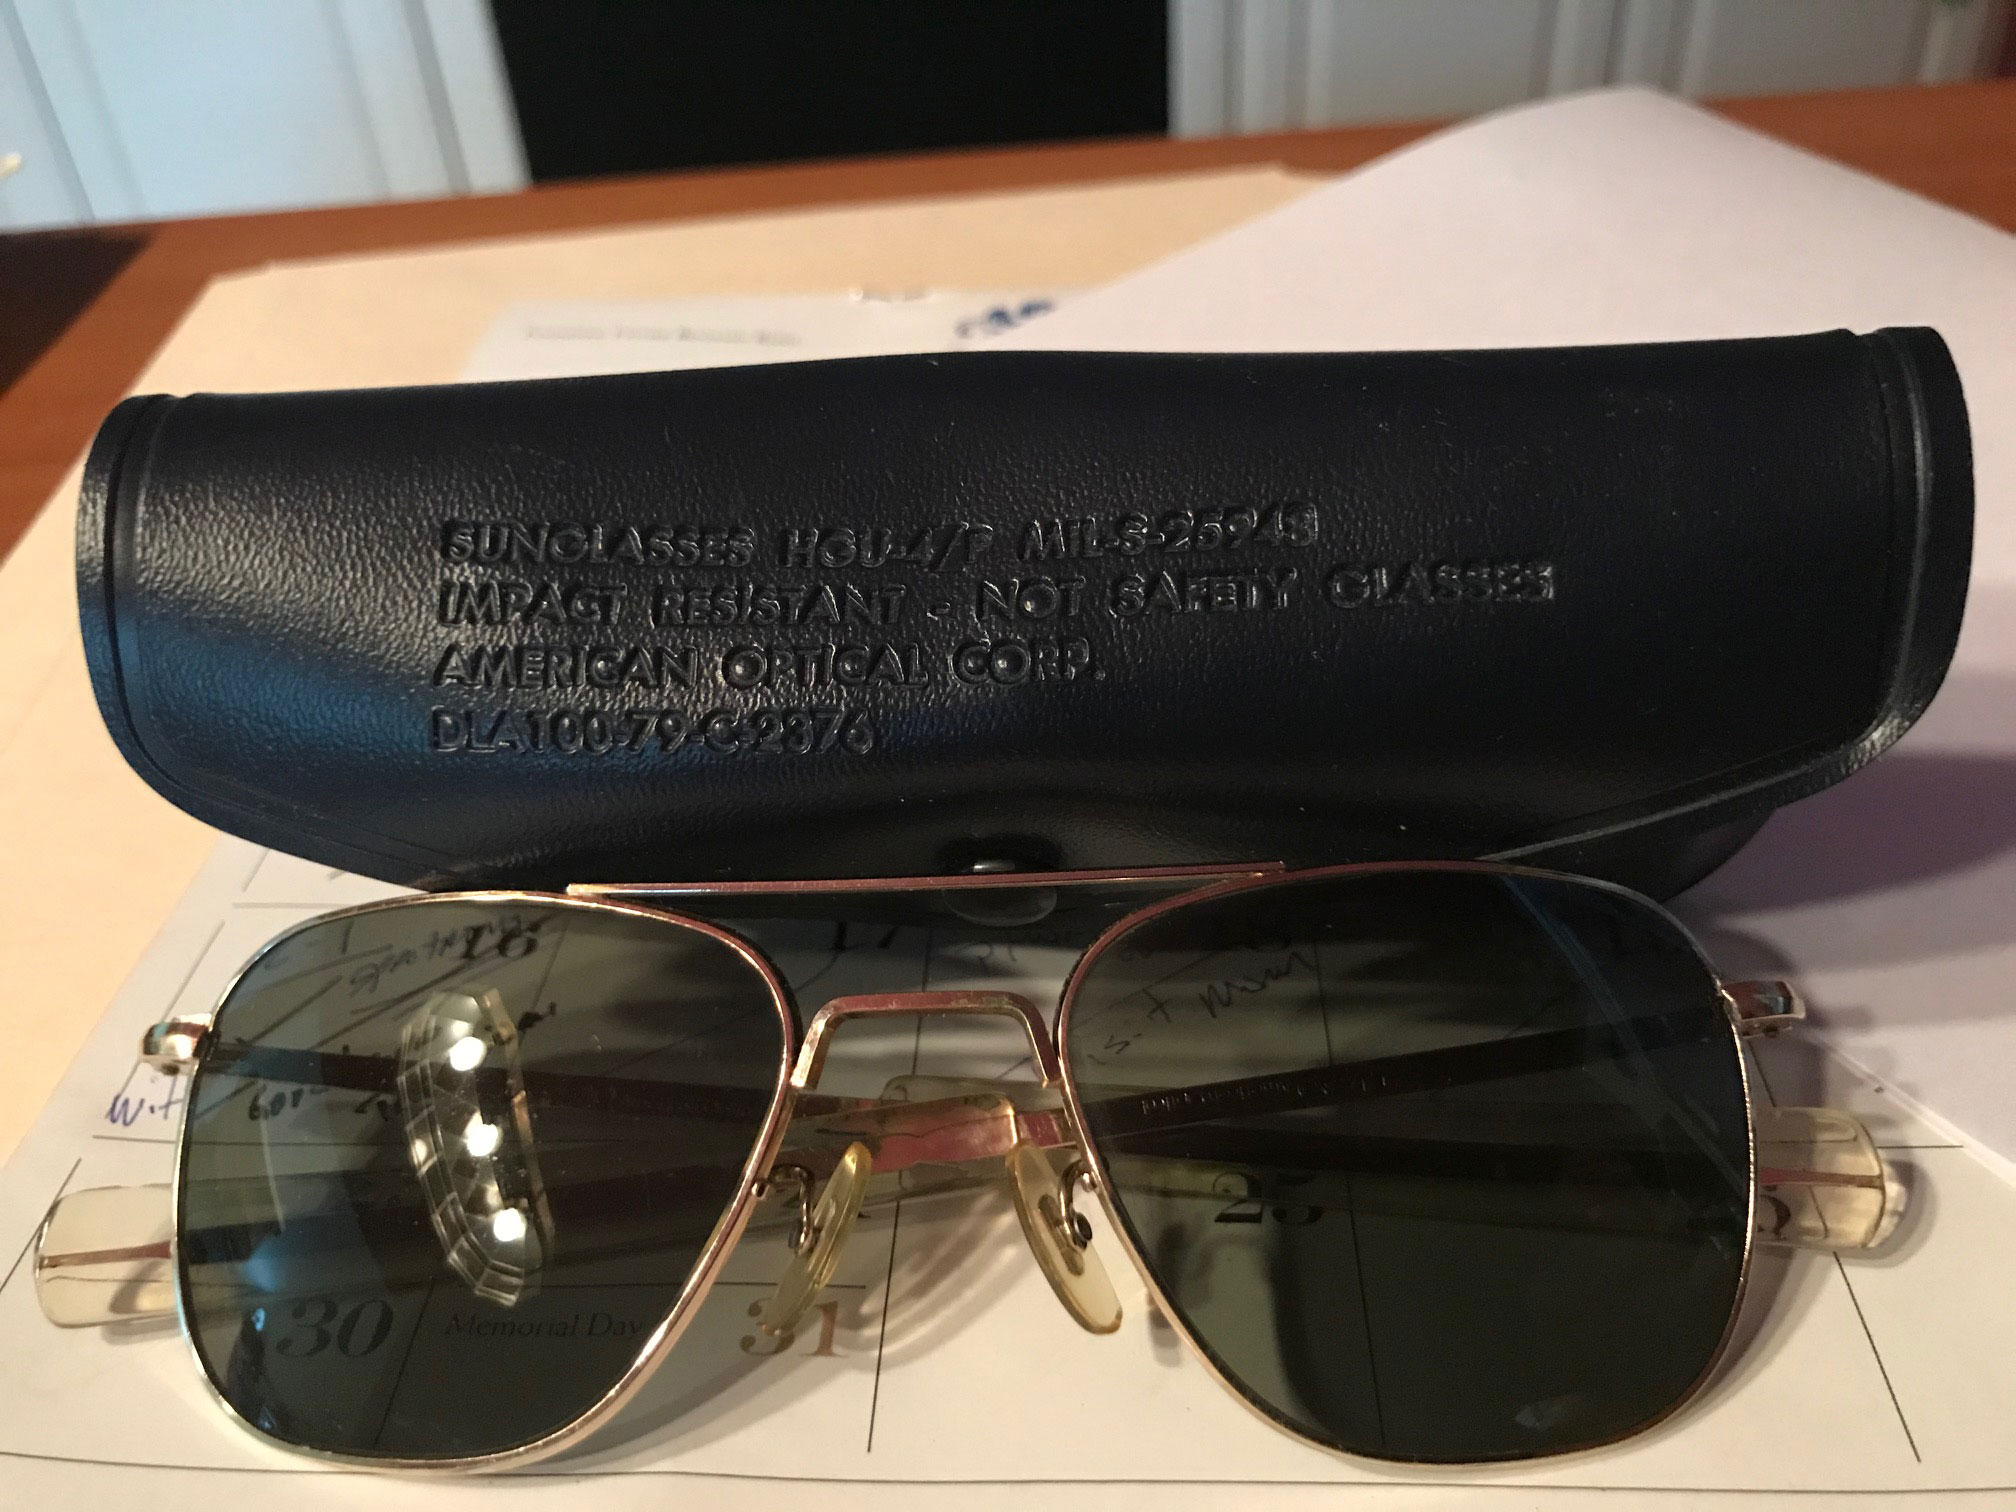 Original Pilot® Sunglasses